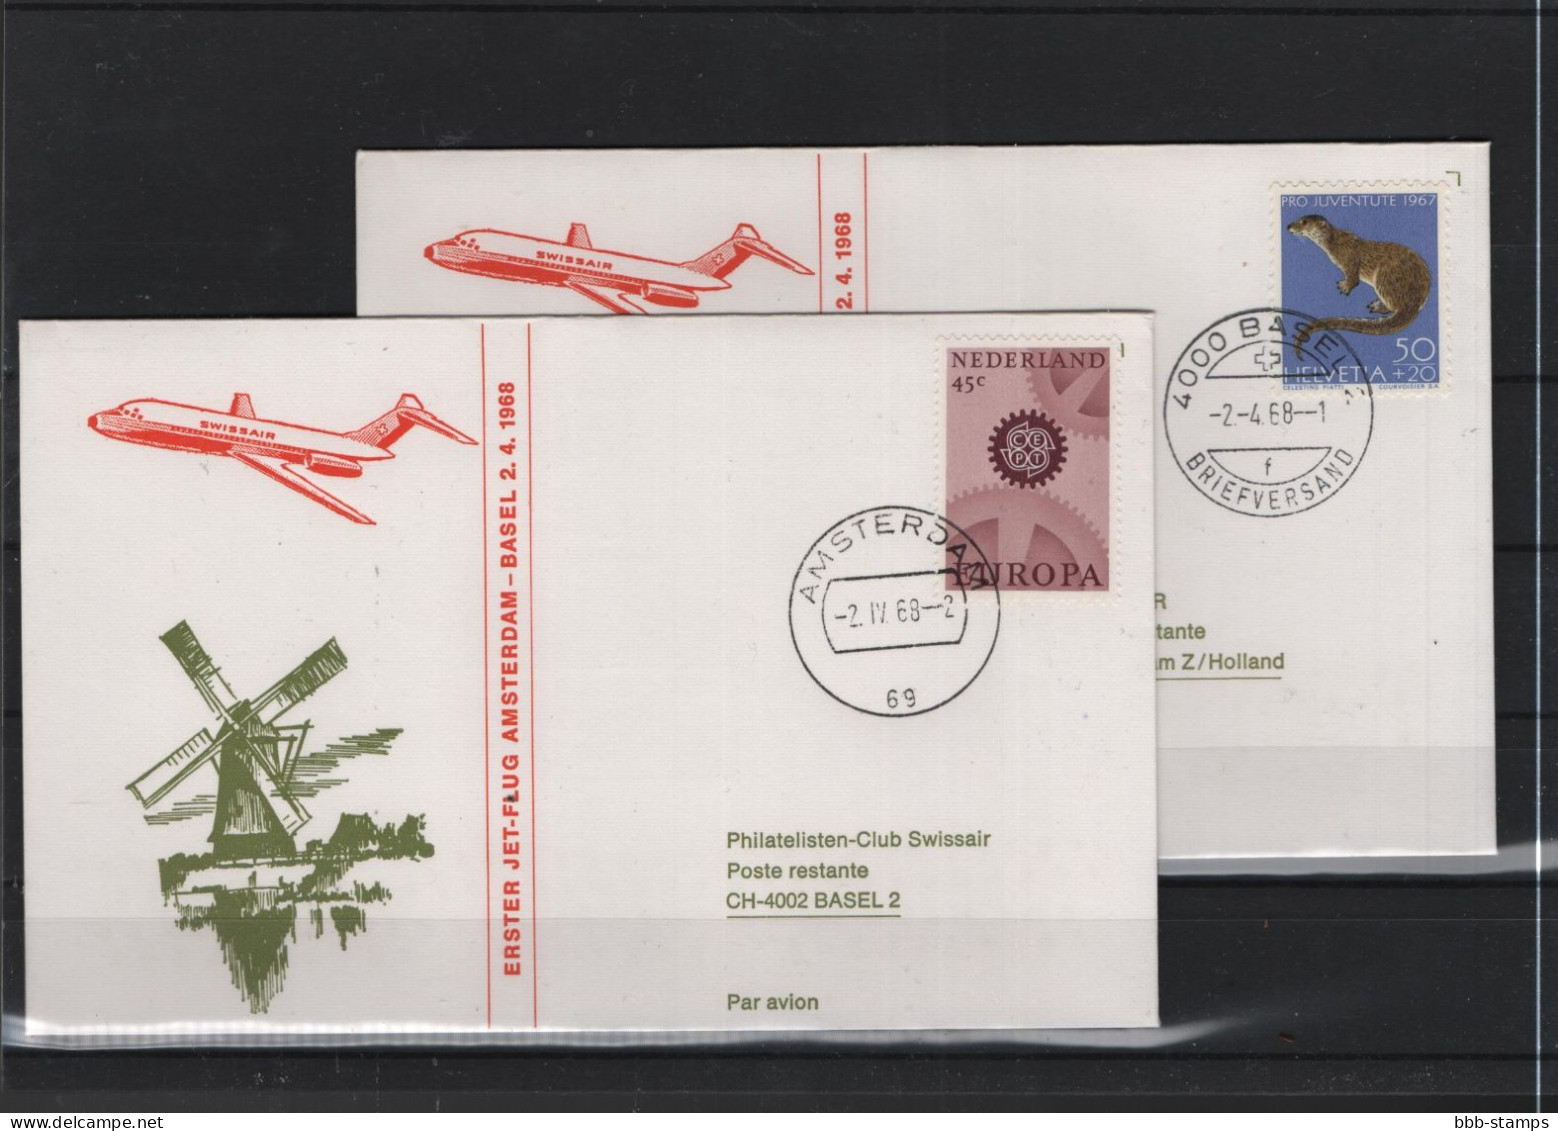 Schweiz Air Mail Swissair  FFC  2.4.1968 Basel - Amsterdam VV - Eerste Vluchten